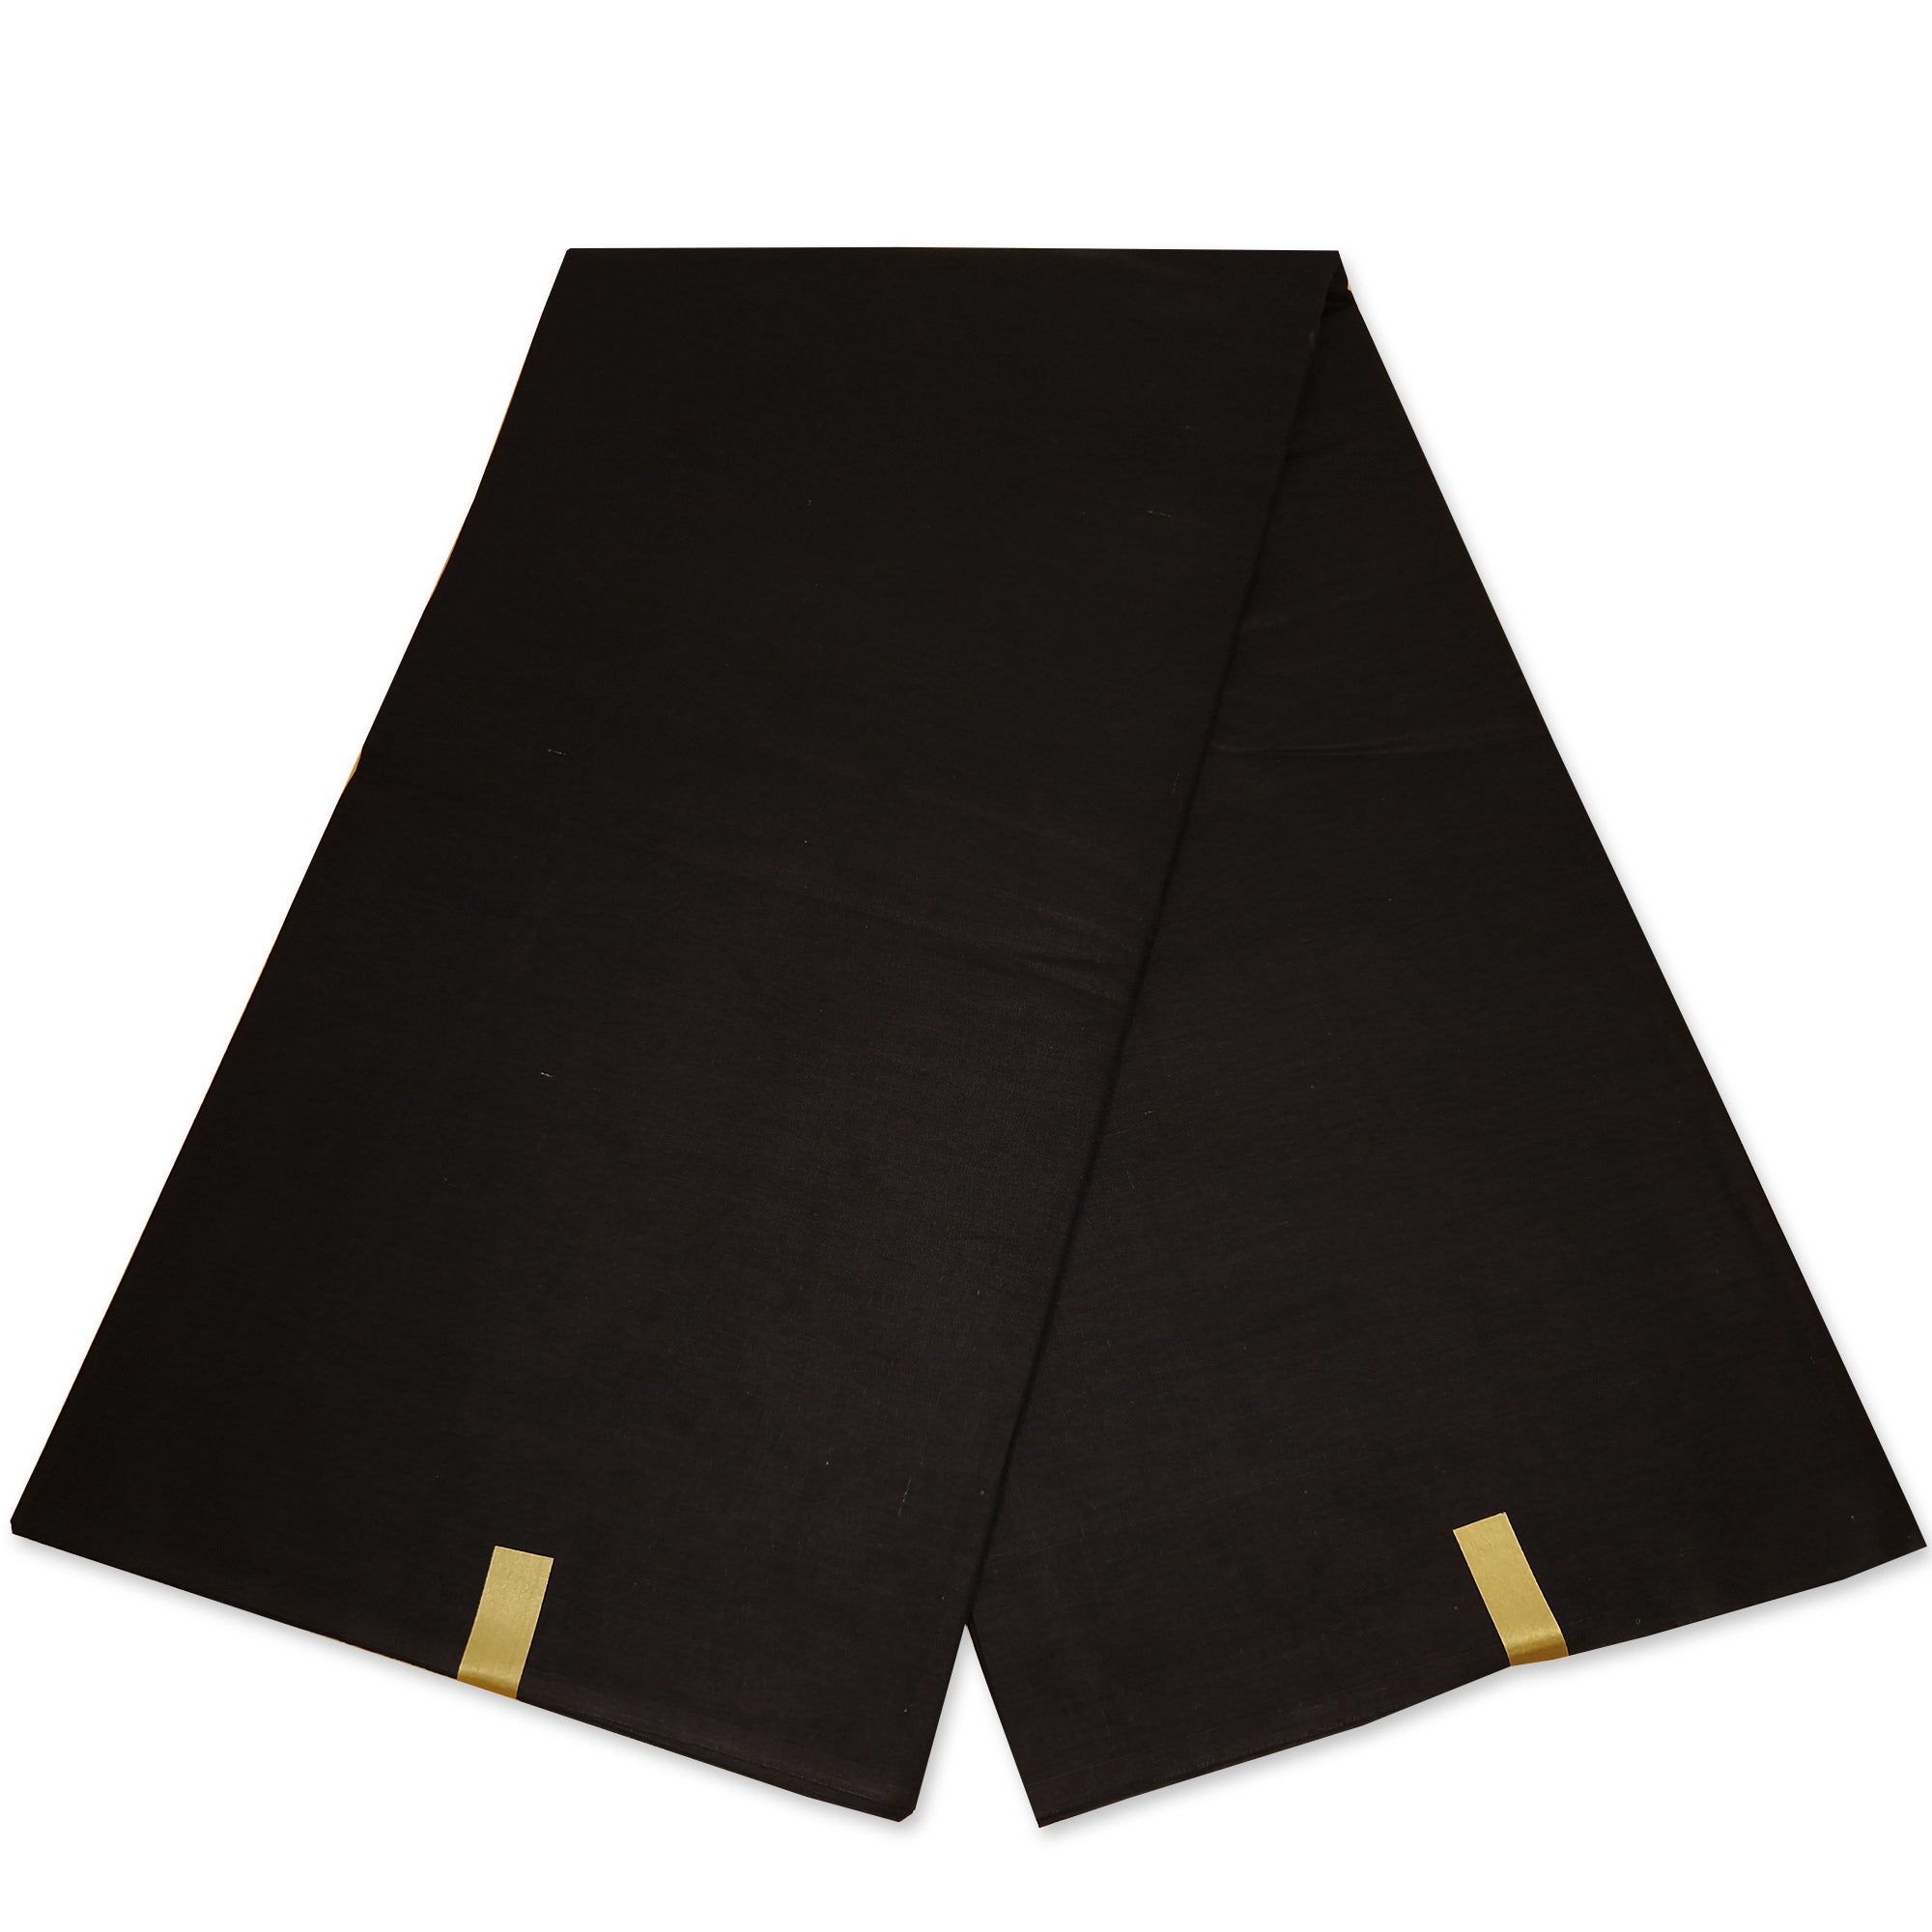 Black Plain Fabric - Black solid color - 100% cotton